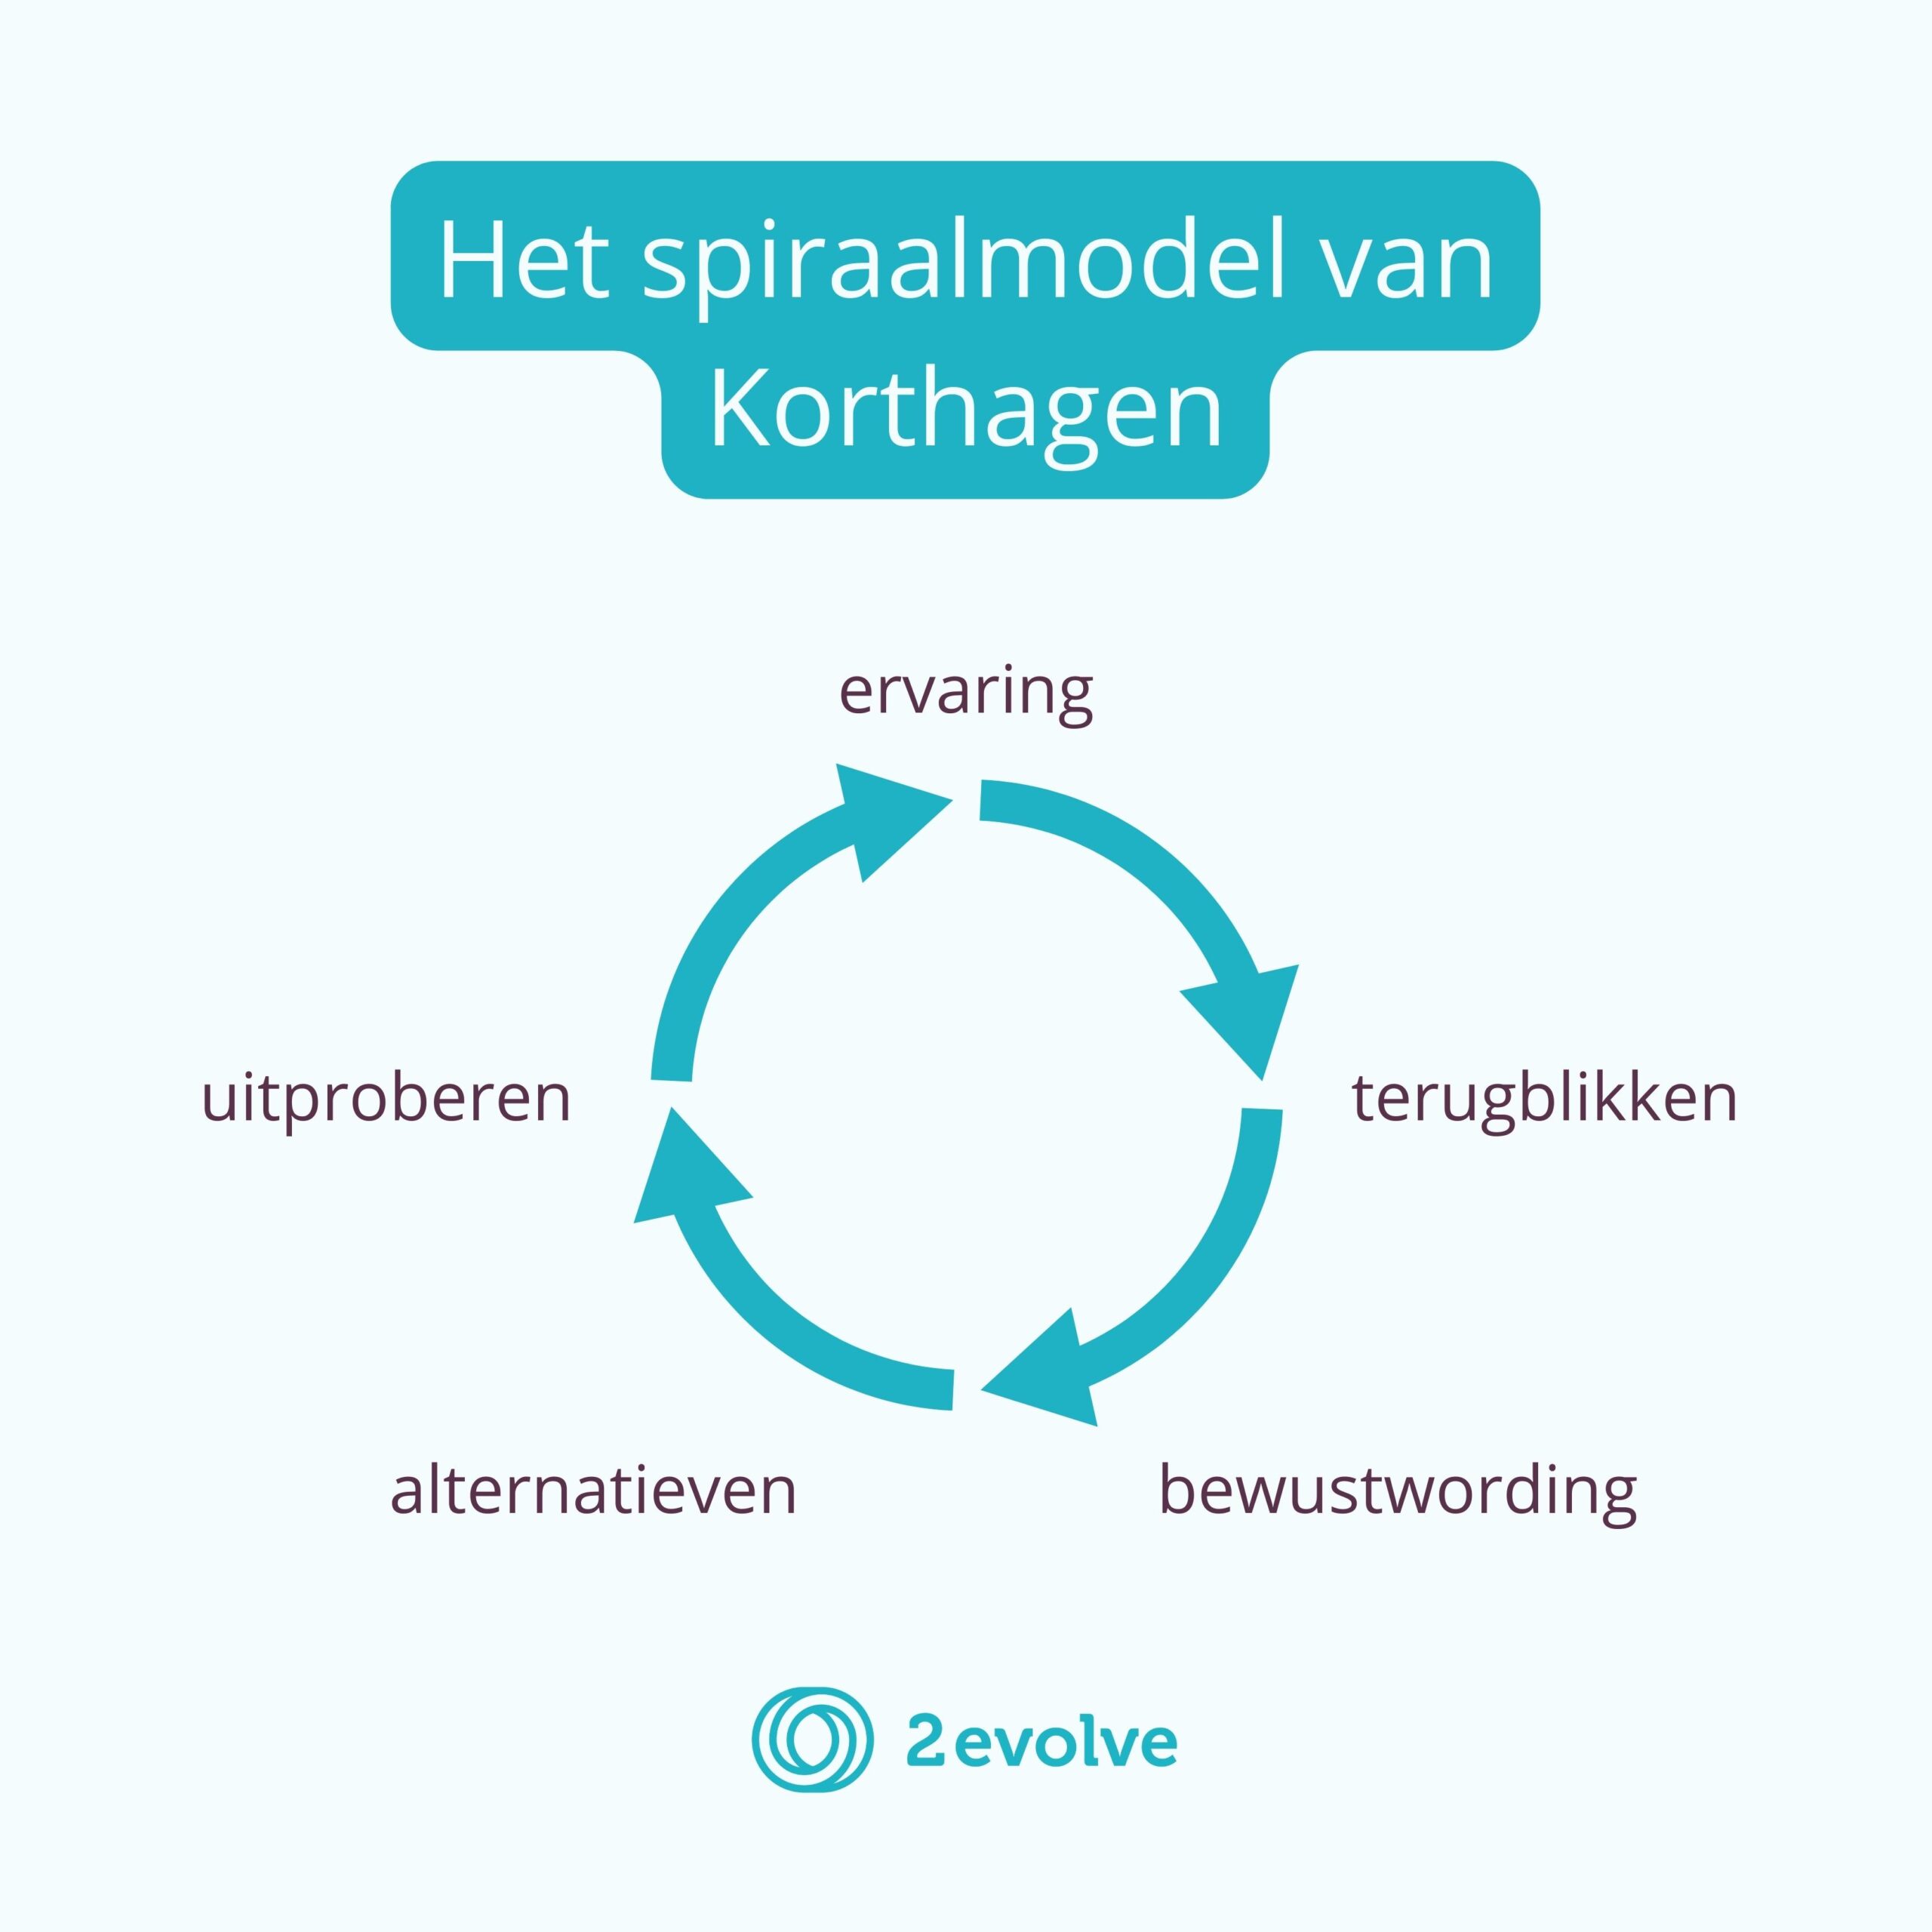 Het spiraalmodel van Korthagen